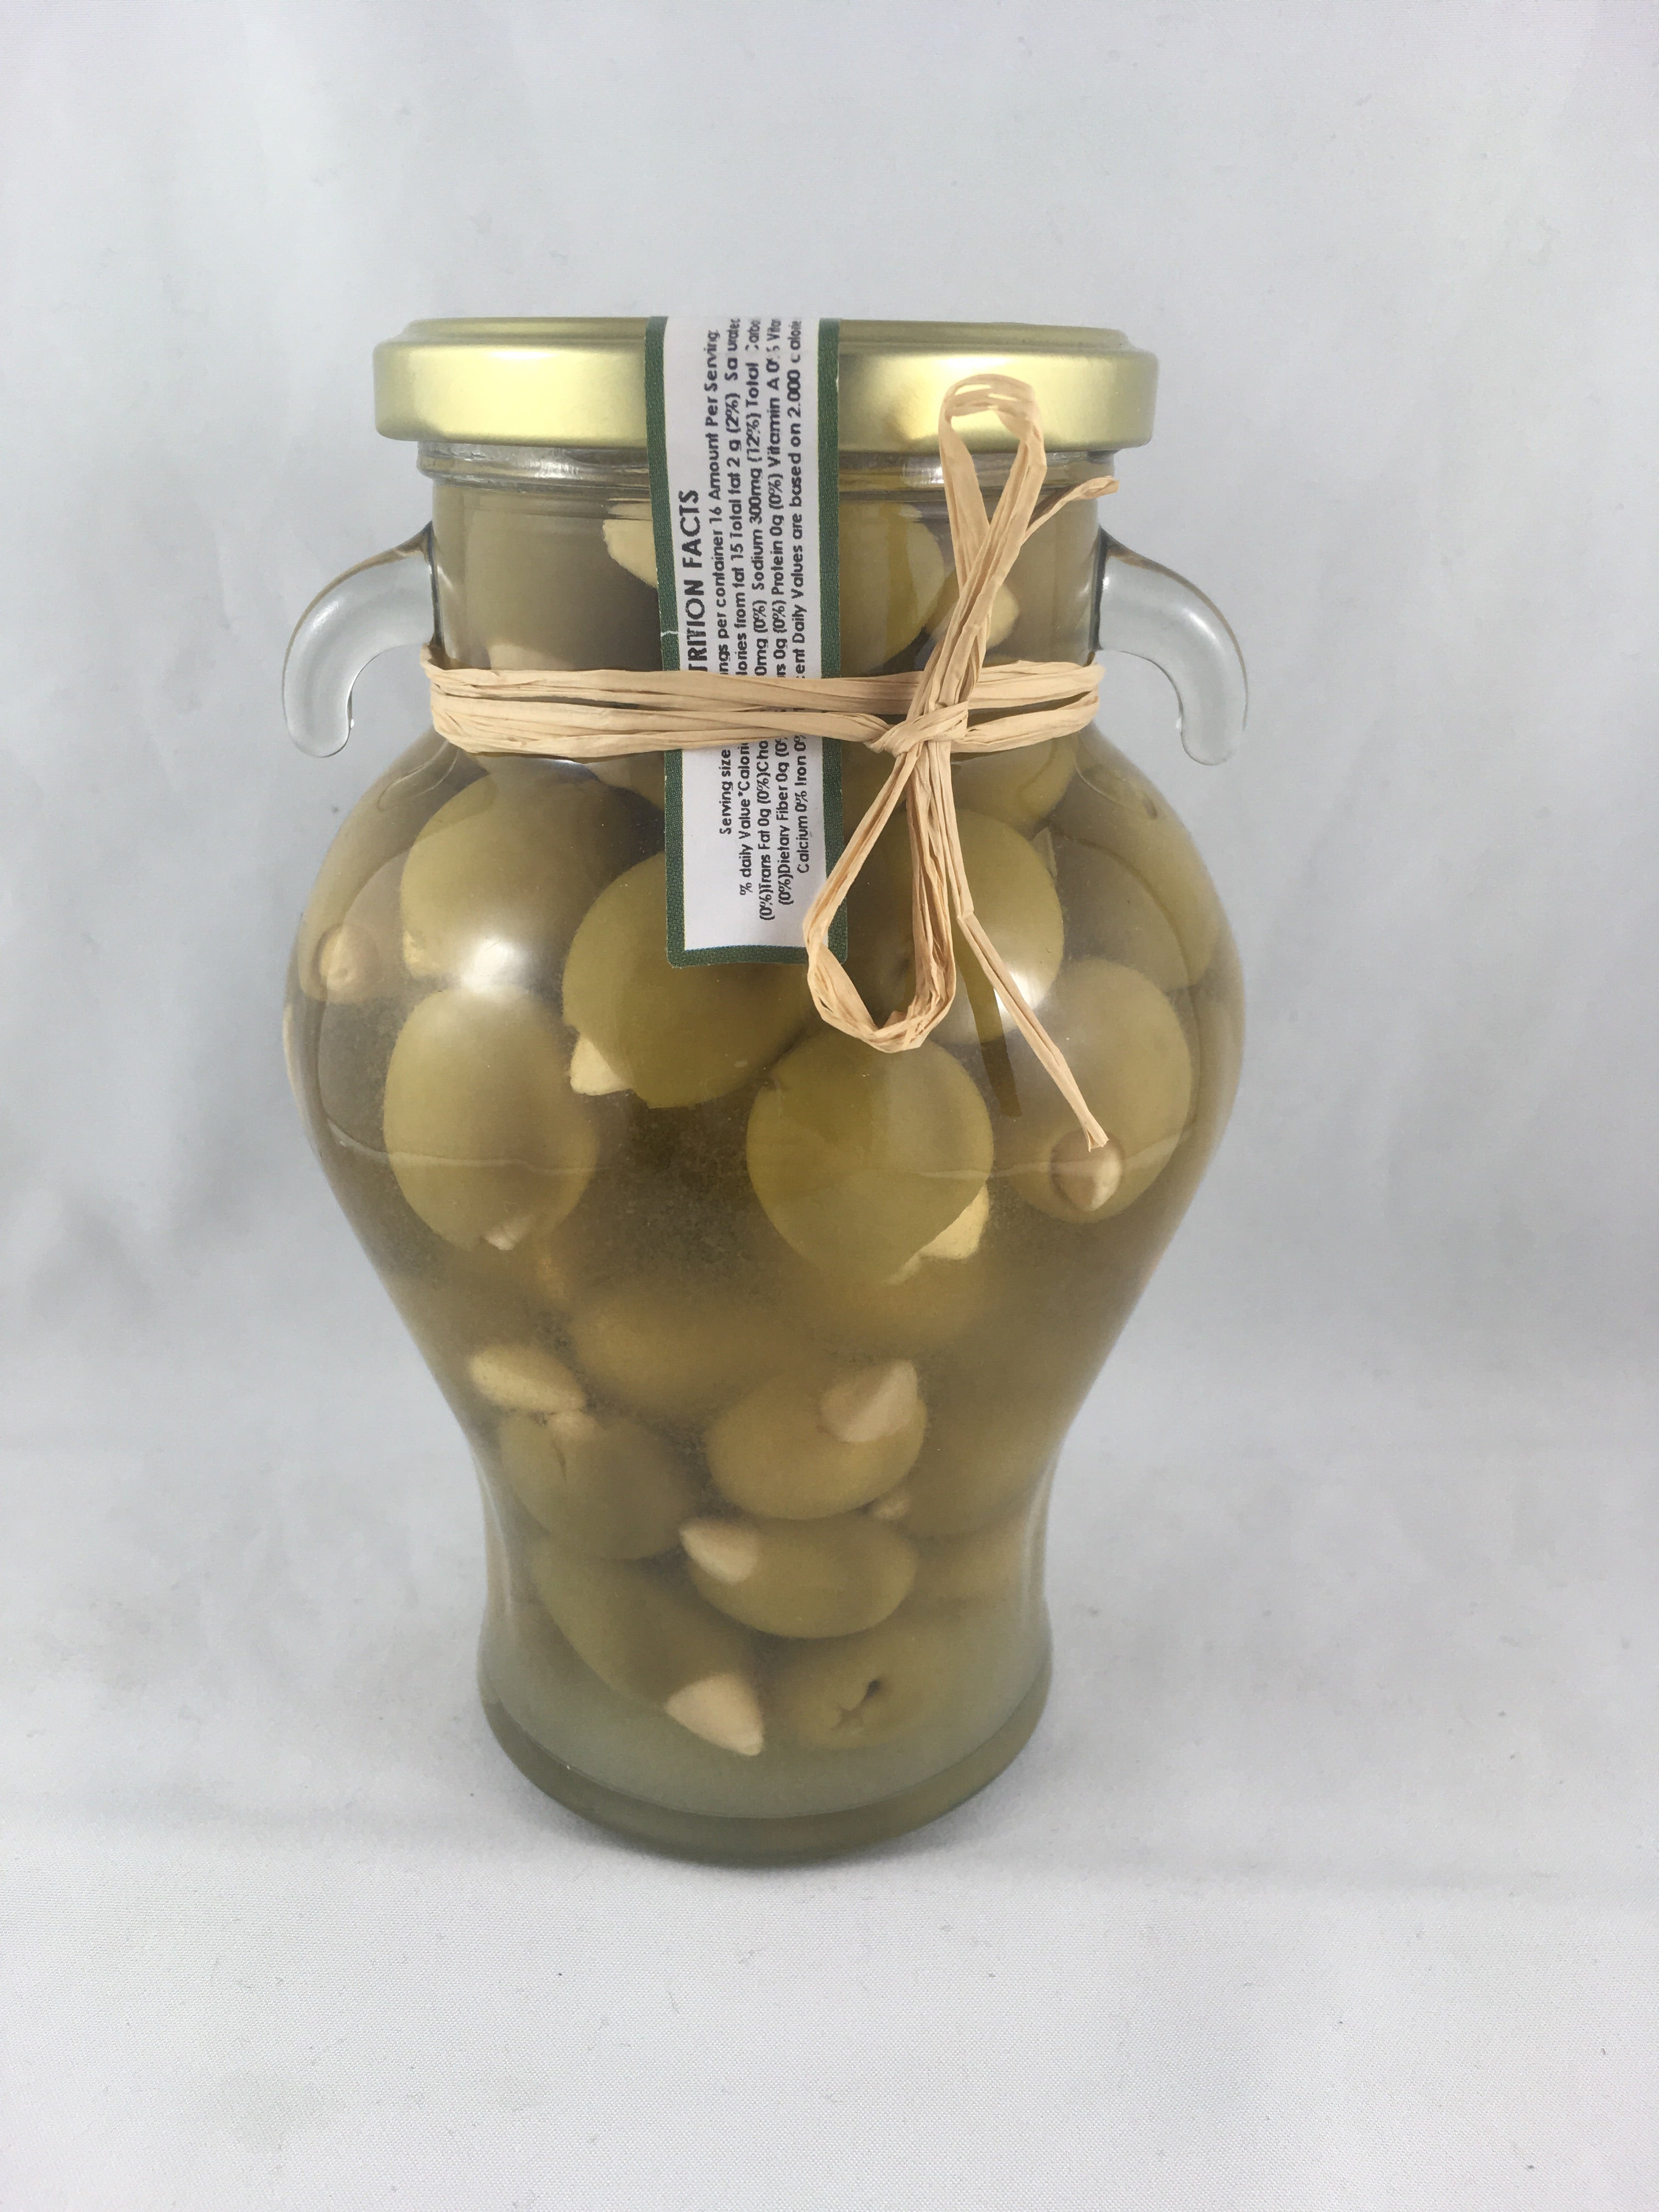 Delizia Almond Stuffed Olives